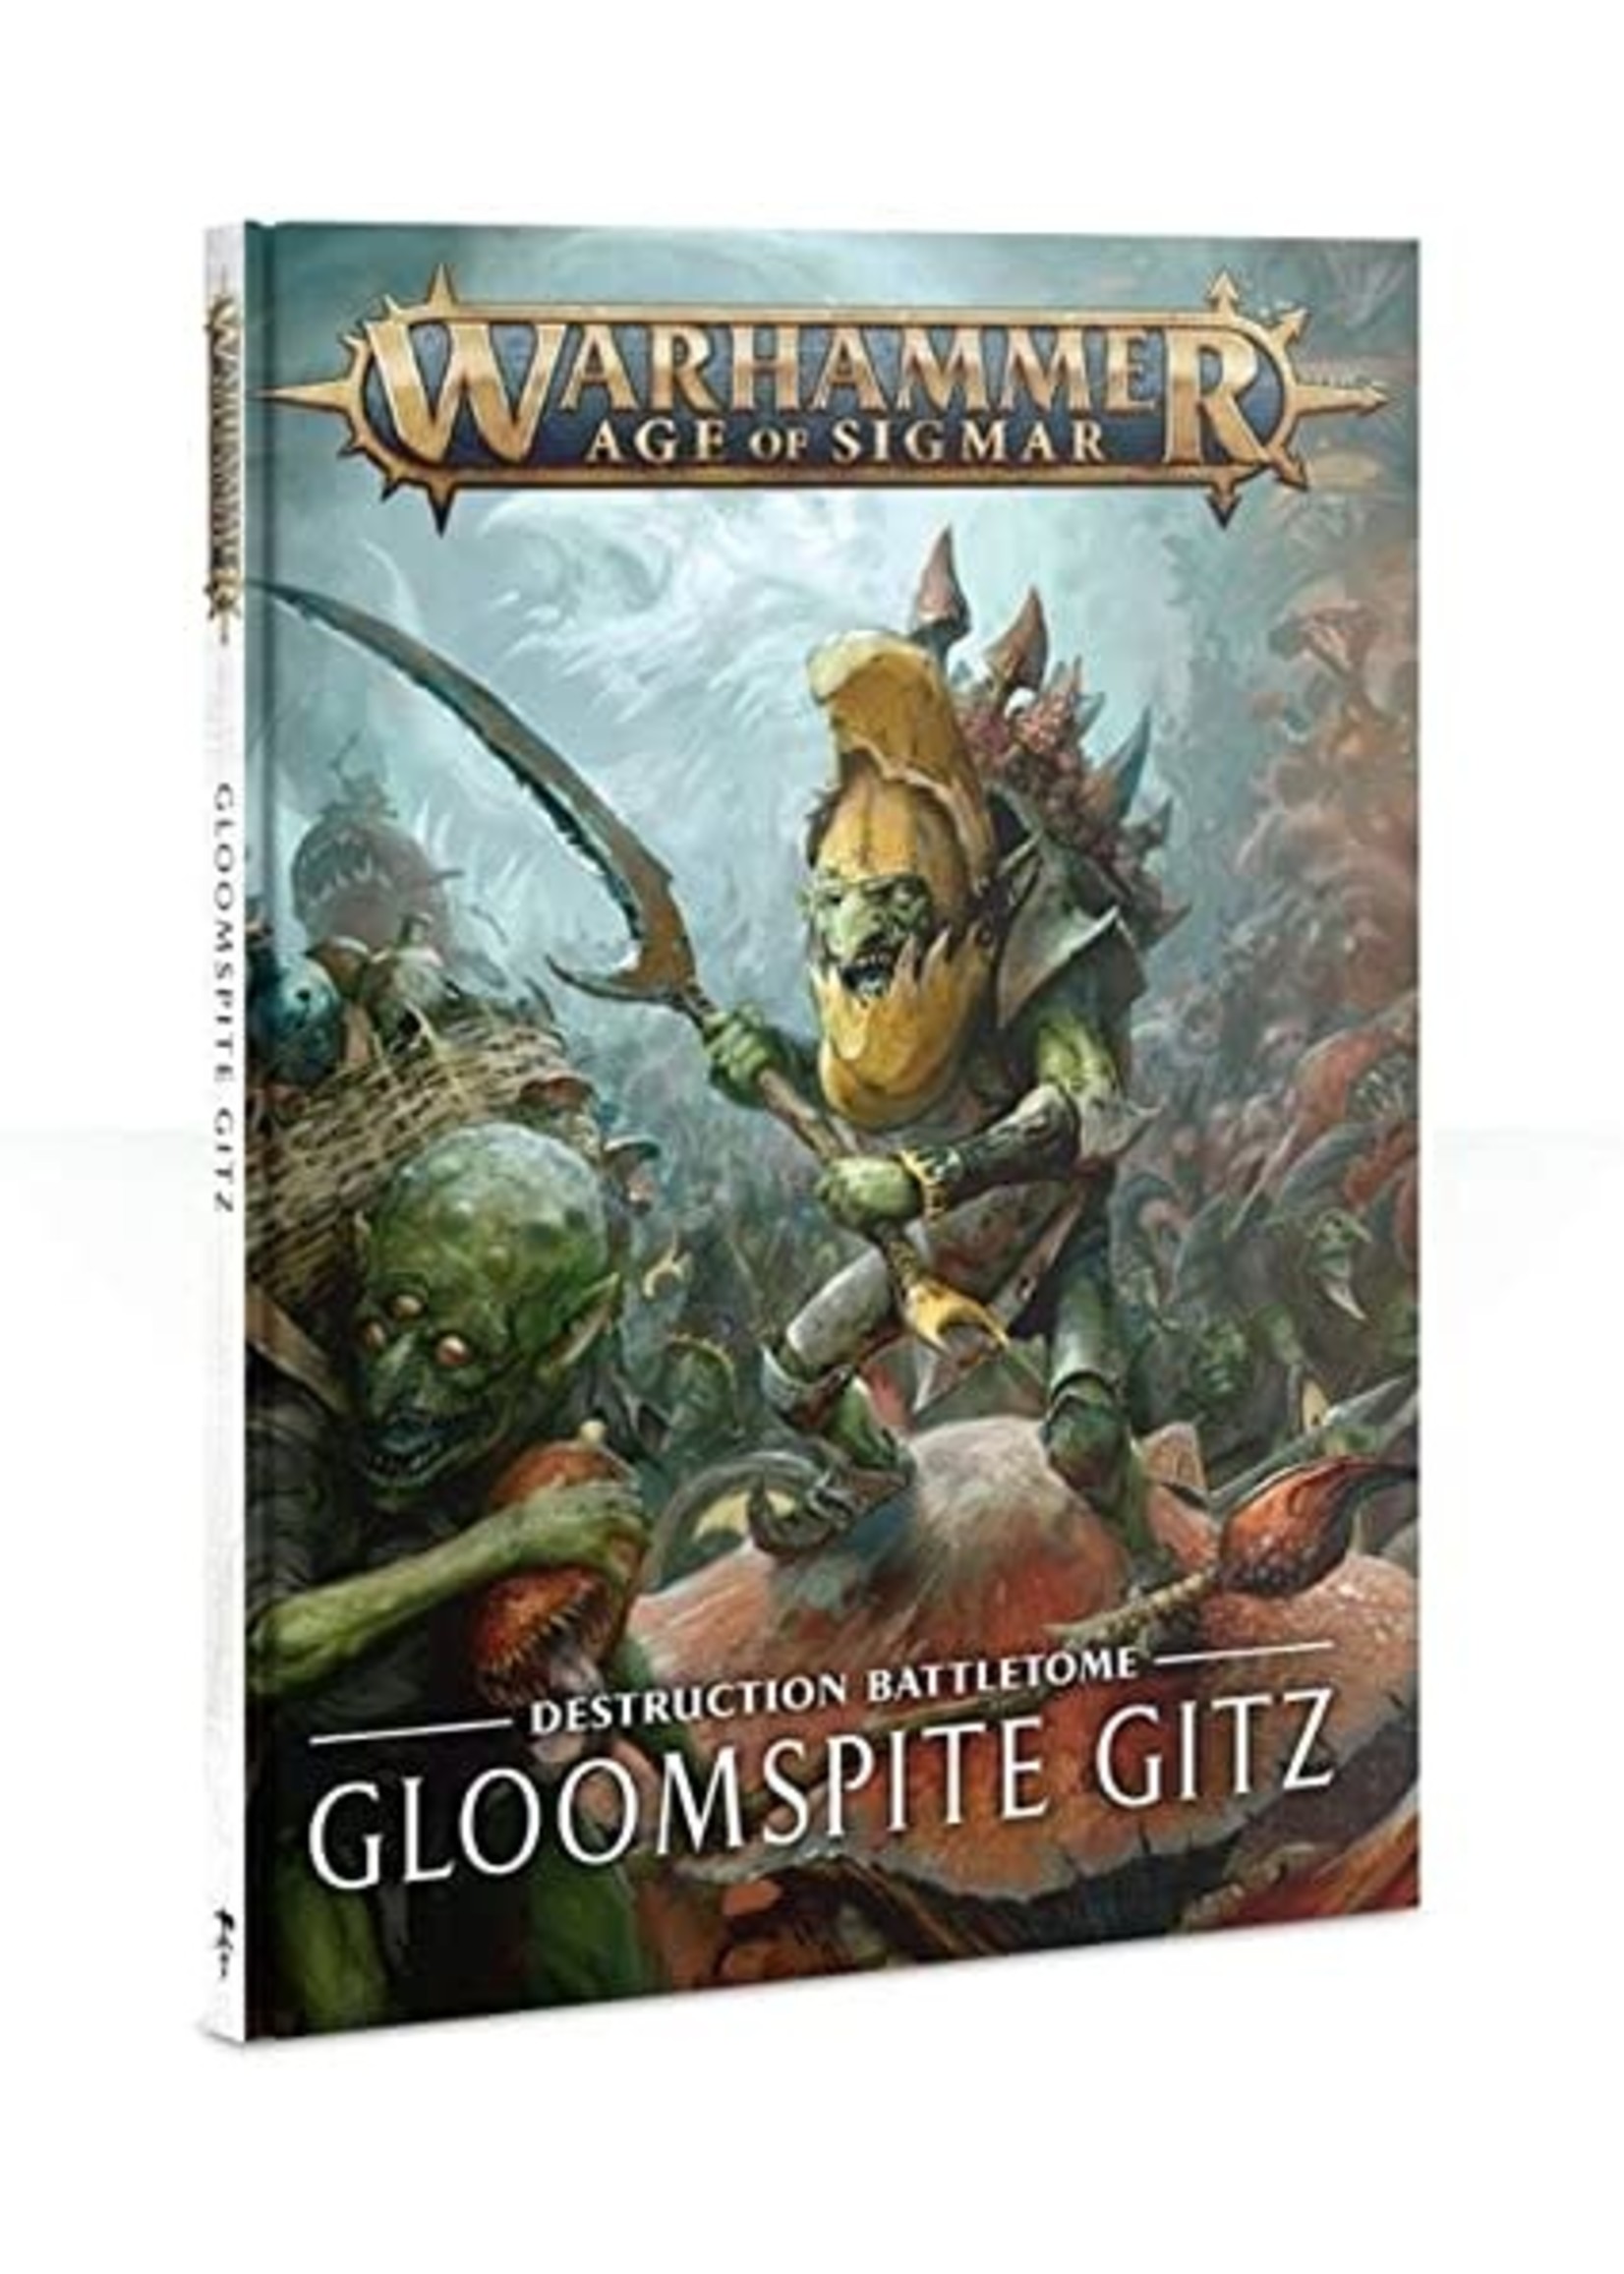 Games Workshop Gloomspite Gitz - Destruction Battletome - Warhammer Age of Sigmar